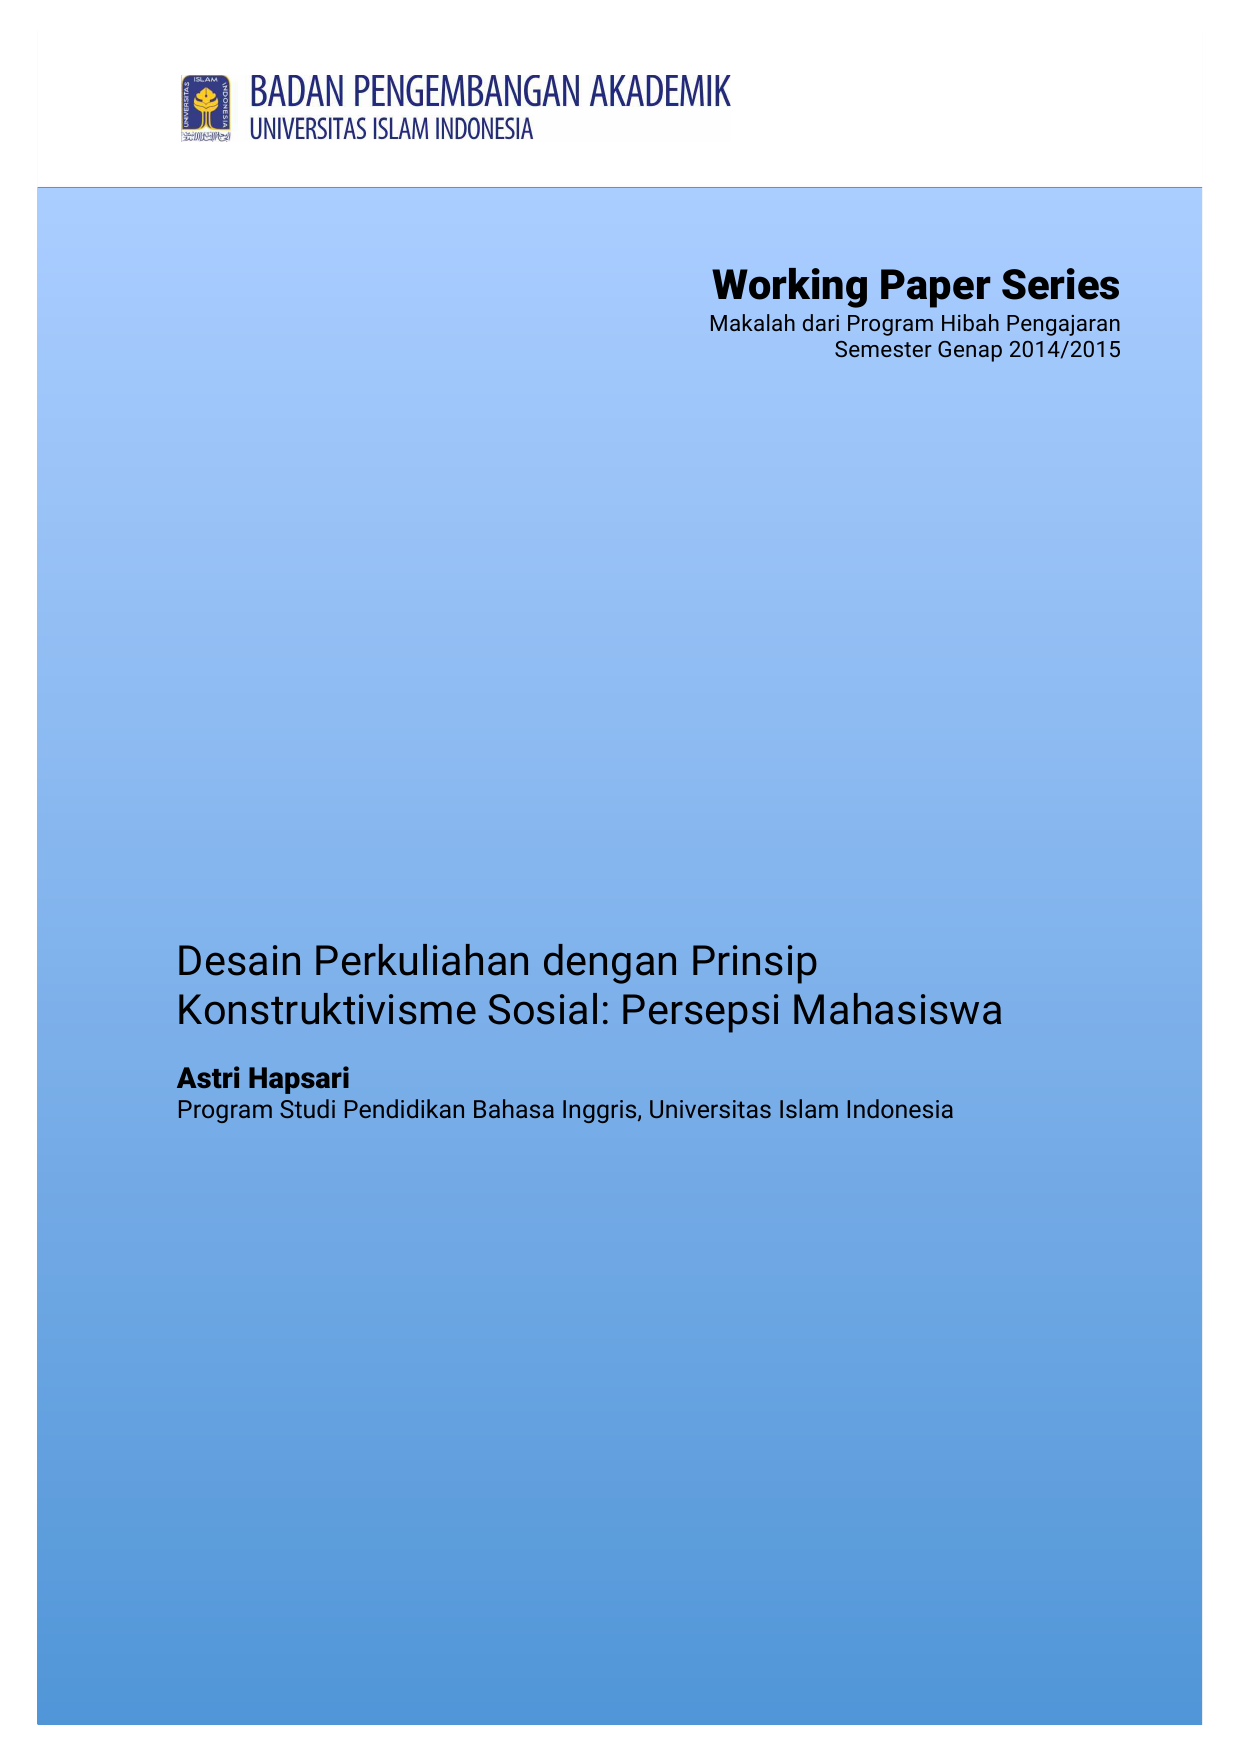 Working Paper Series Makalah dari Program Hibah Pengajaran Semester Genap 2014 2015 Desain Perkuliahan dengan Prinsip Konstruktivisme Sosial Persepsi